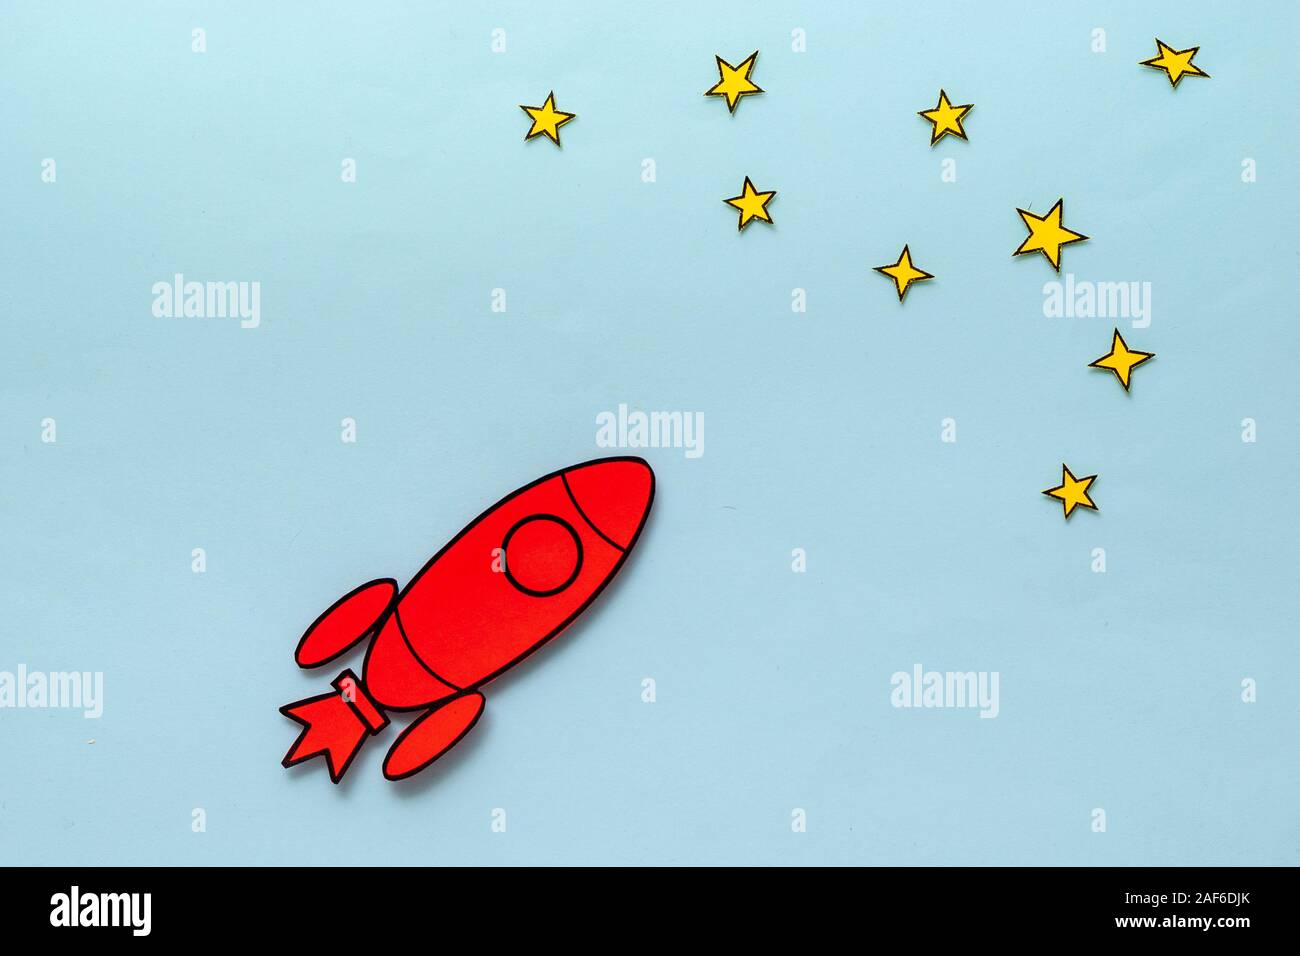 Colorido red rocket zoom a través del espacio en un concepto de la ambición y el éxito Foto de stock